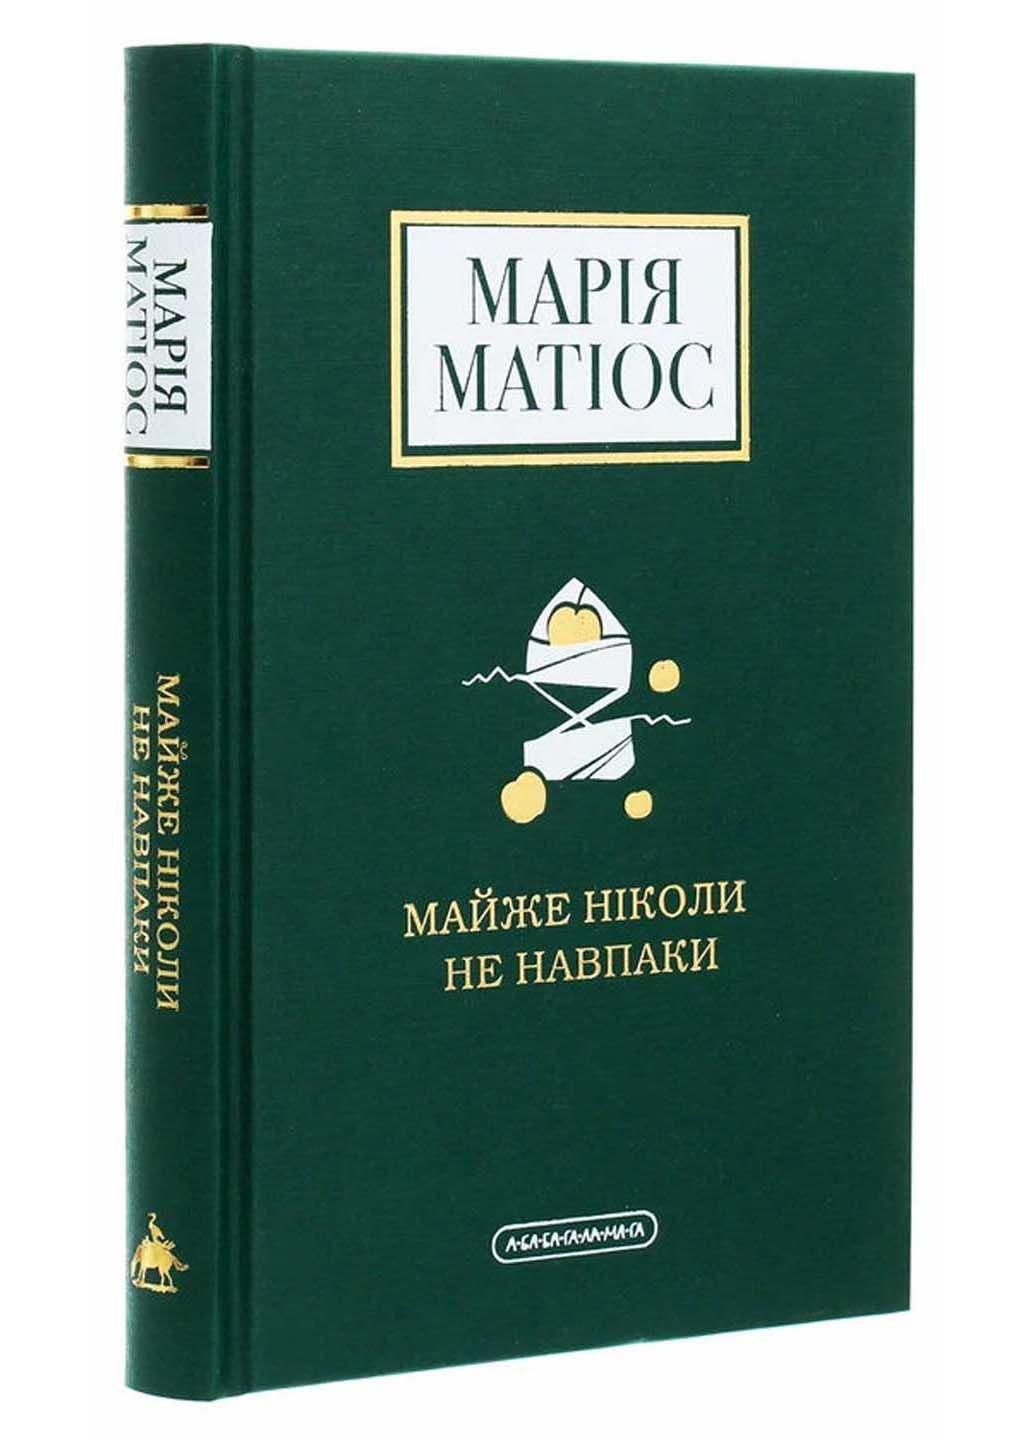 Книга Майже ніколи не навпаки Марія Матіос 2020р 192 с Издательство «А-ба-ба-га-ла-ма-га» (293058734)